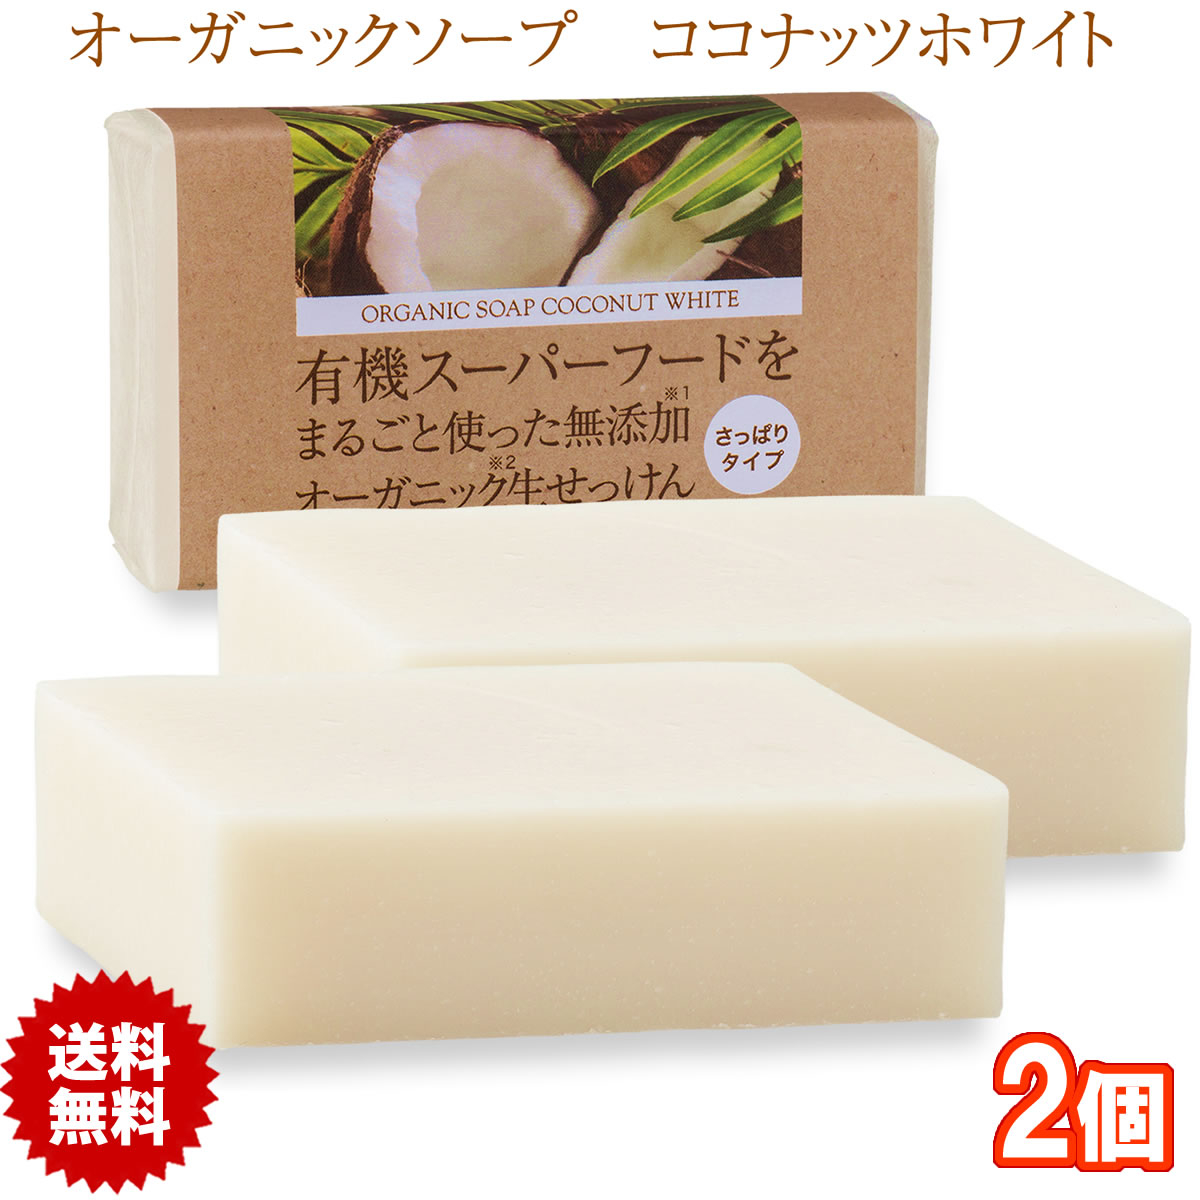 有機ココナッツ石鹸 80g 2個 コールドプロセス 日本製 オーガニックソープ ココナッツオイル 石けん 無添加 生せっけん 1